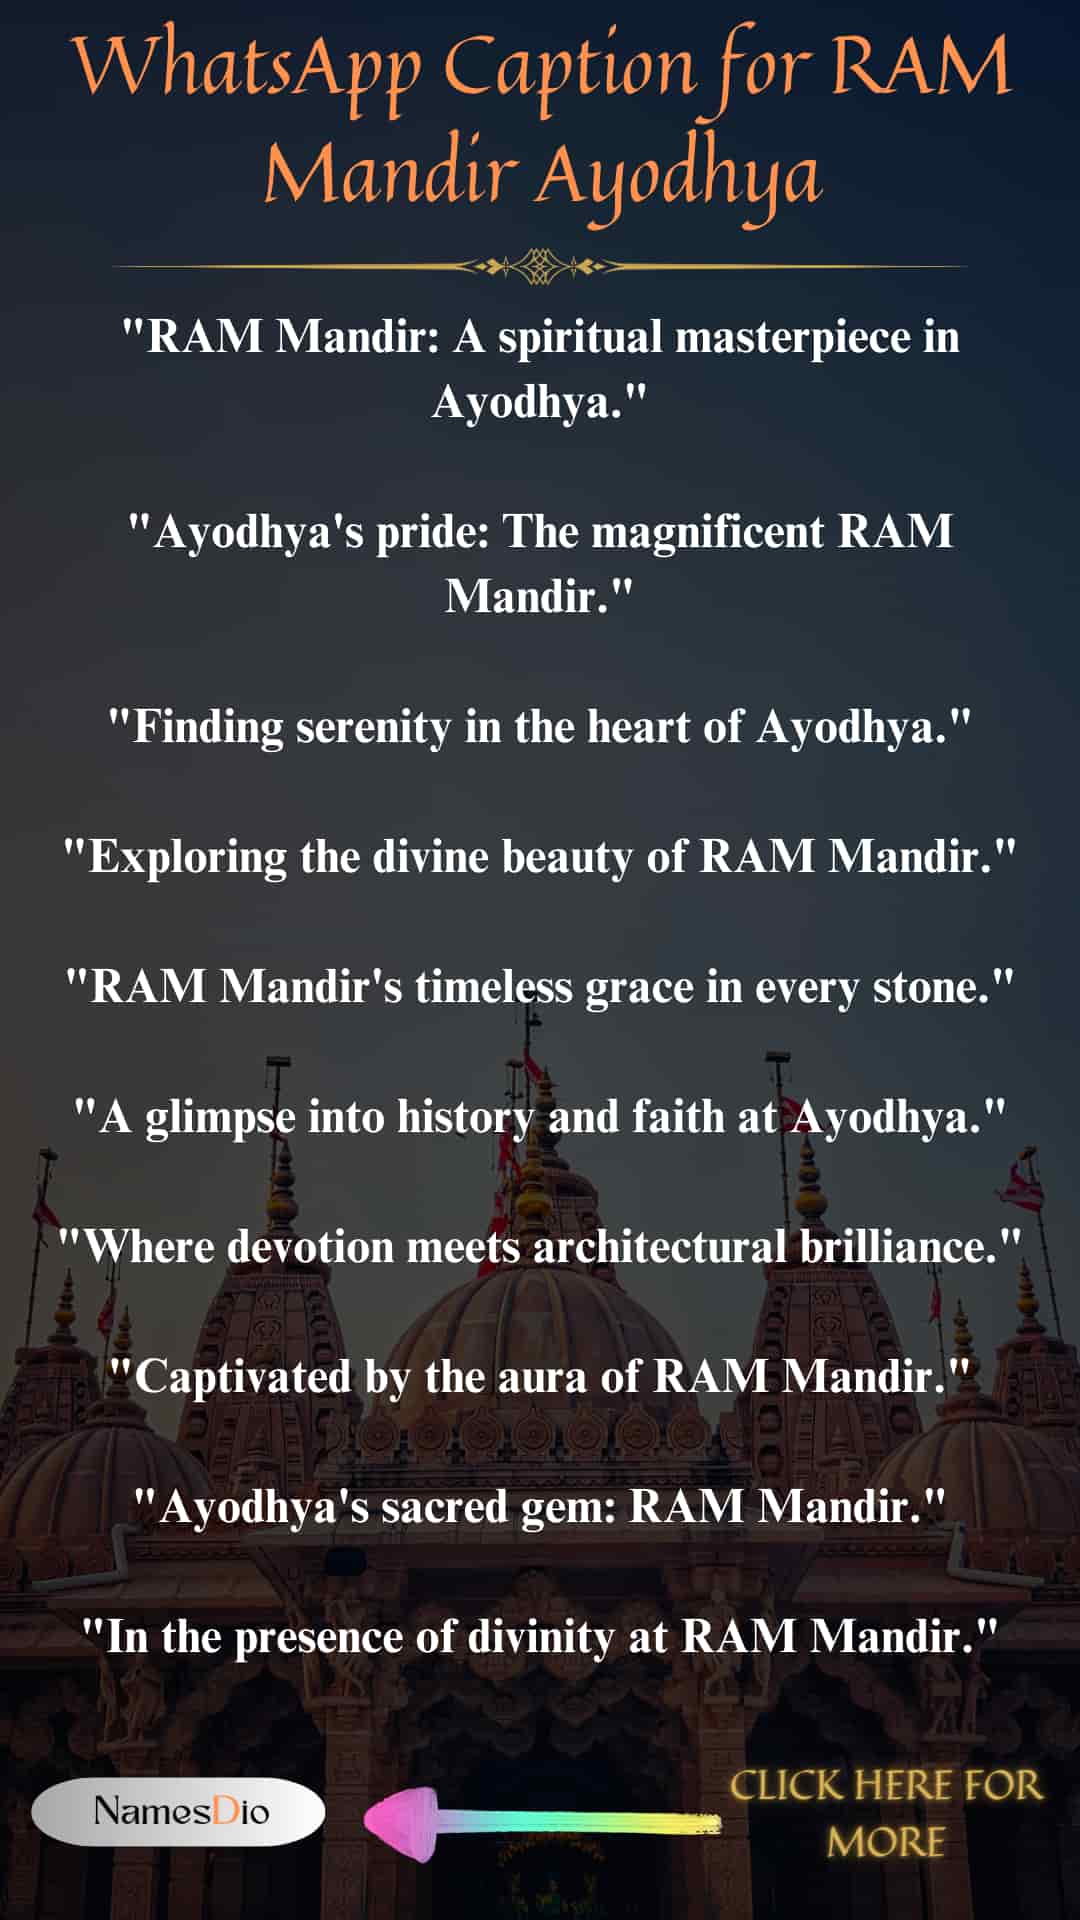 WhatsApp-Caption-for-RAM-Mandir-Ayodhya